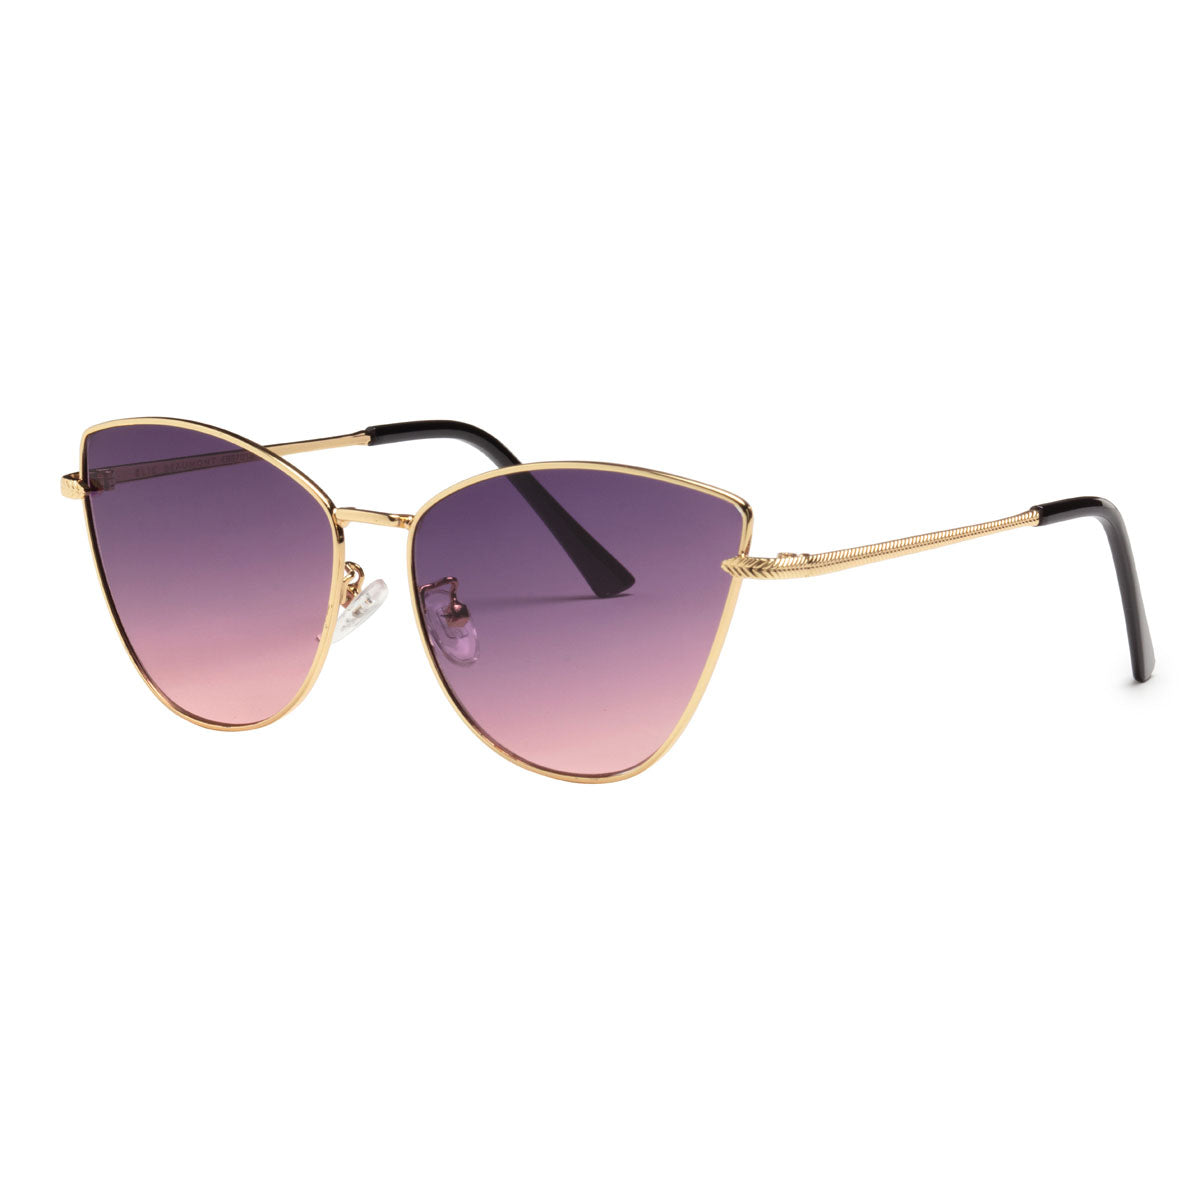 Sunglasses - EBS7013 Malibu